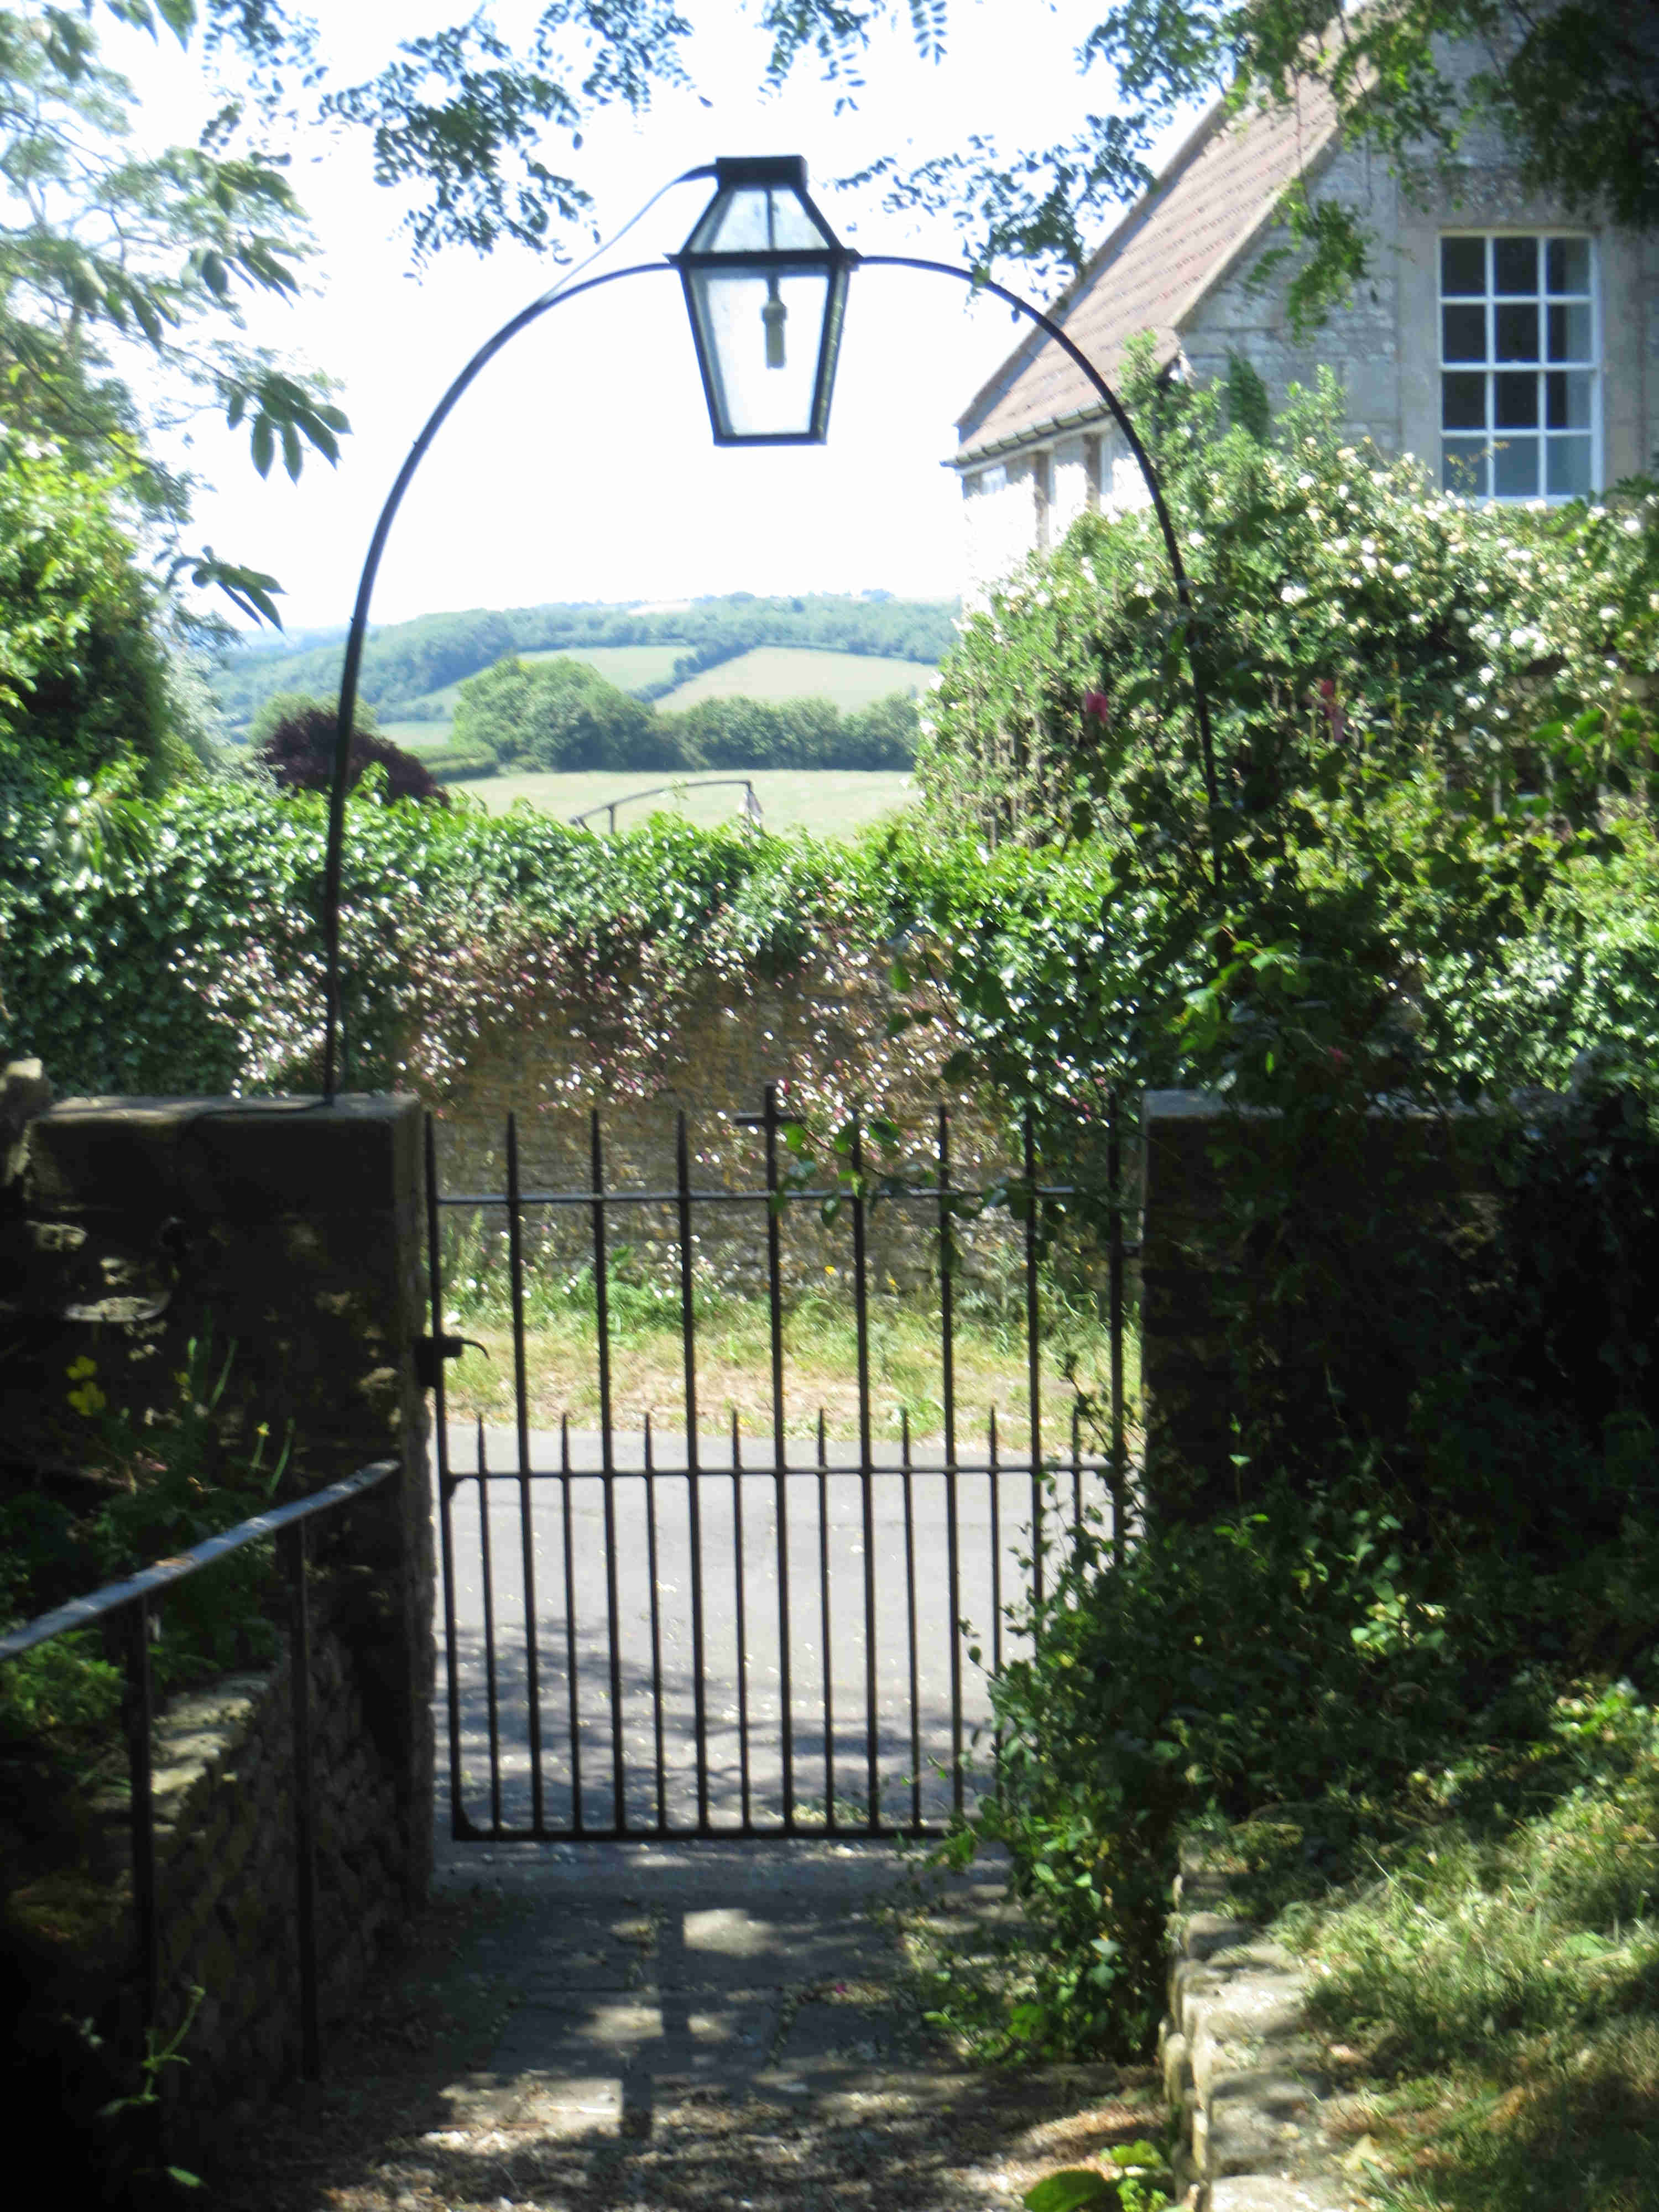 Churchyard gate